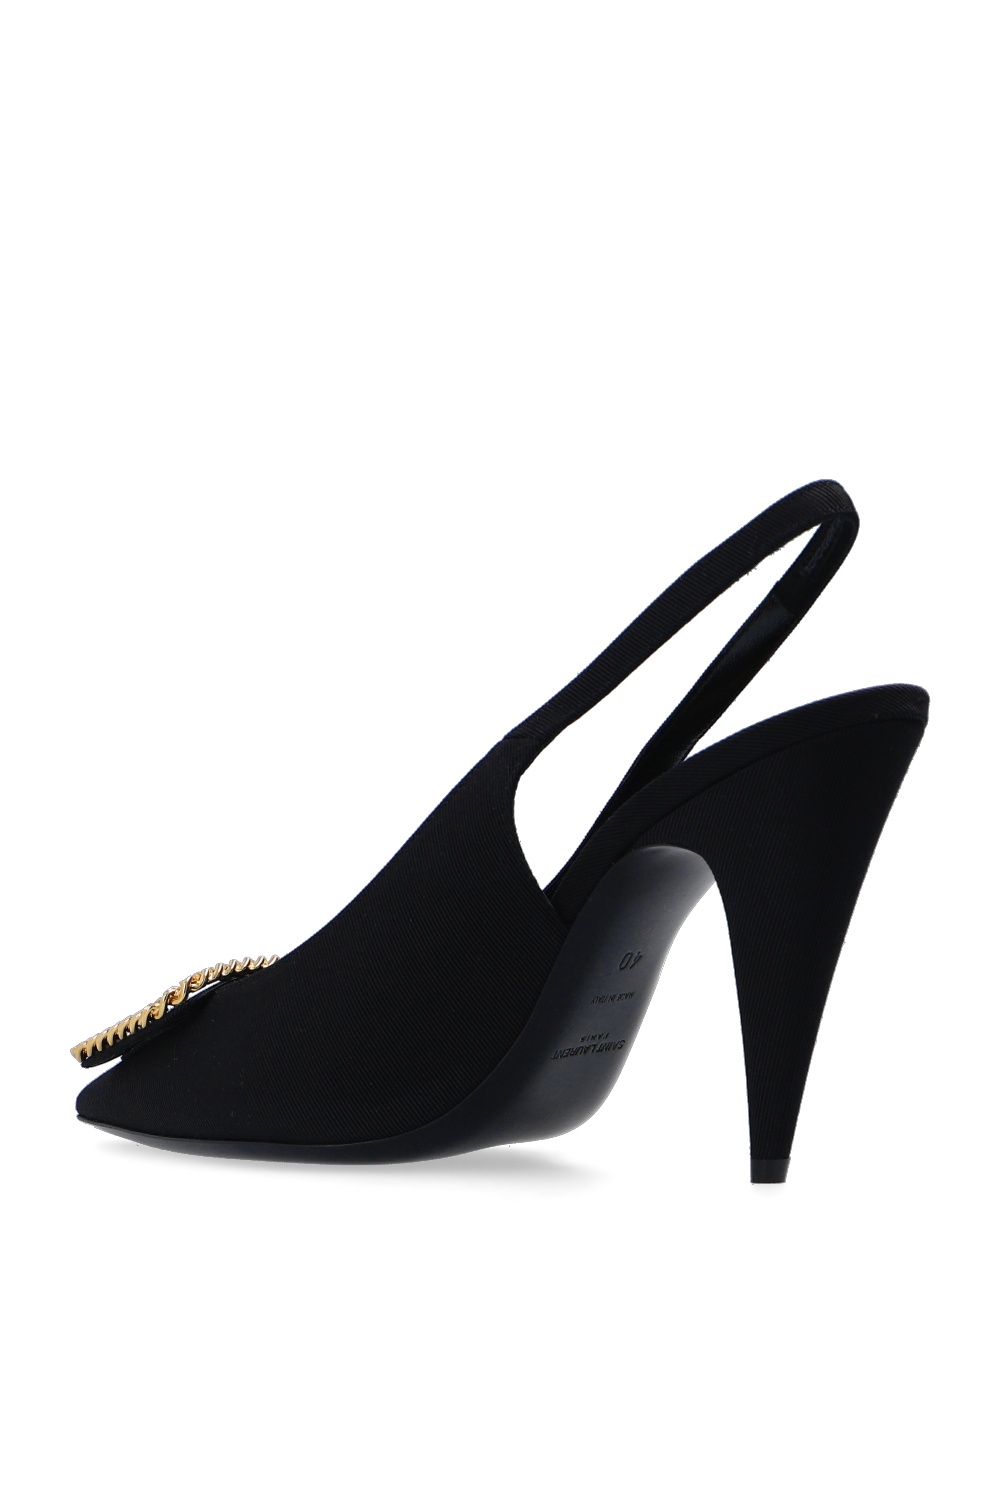 Chaussures Escarpins Stiletto Saint Laurent Stiletto \u201eSt Sulpice\u201c noir 